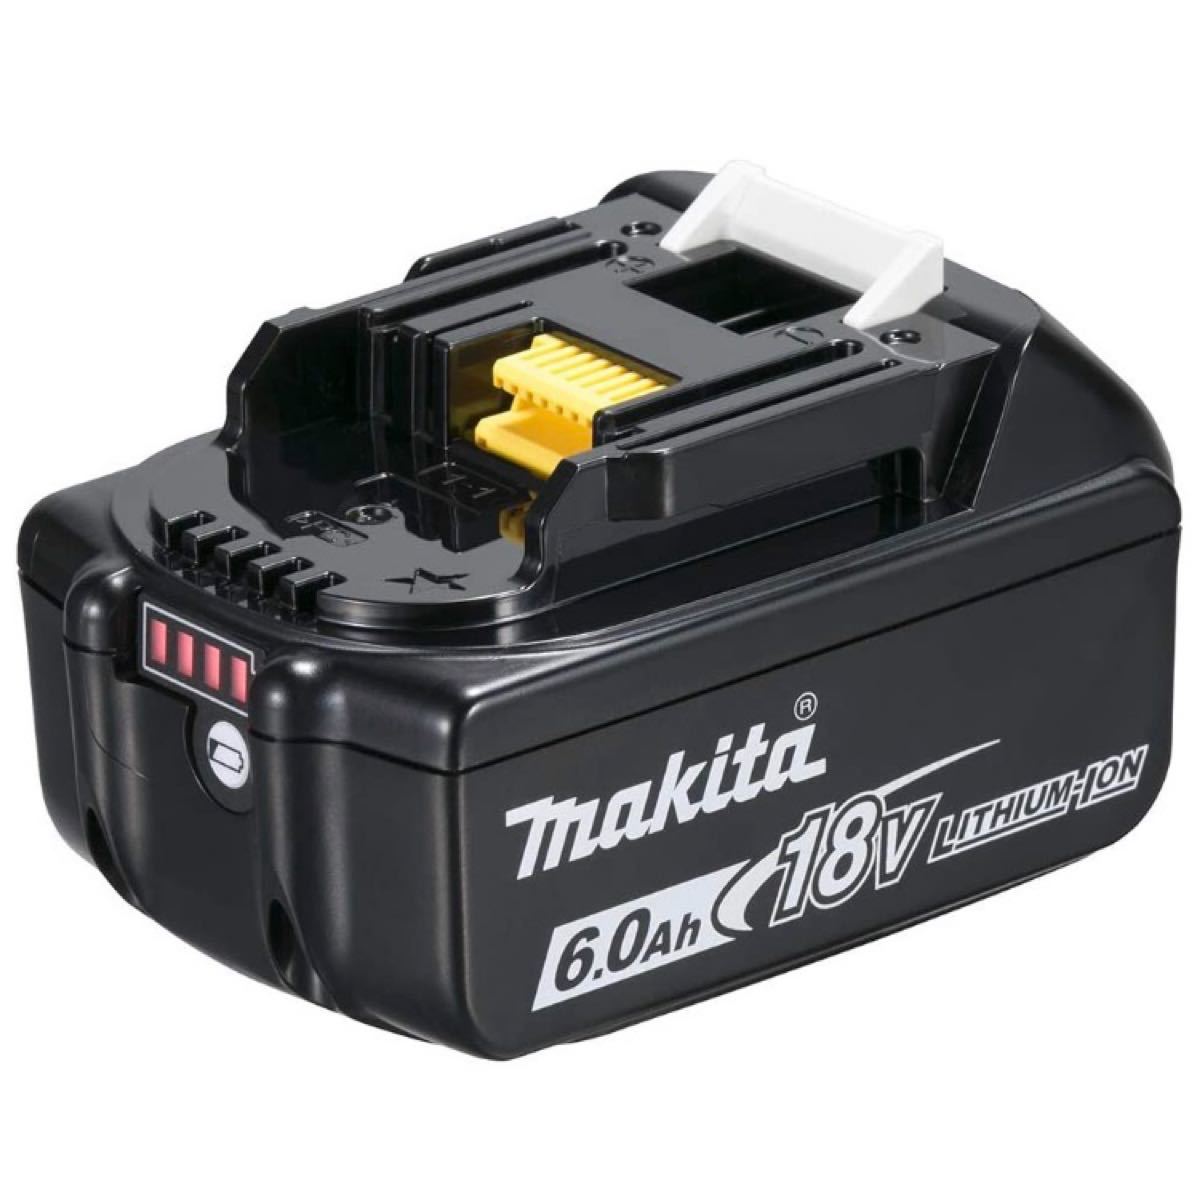 購入純正品  純正バッテリー　2個セット 6.0Ah 18v マキタ　makita 工具/メンテナンス